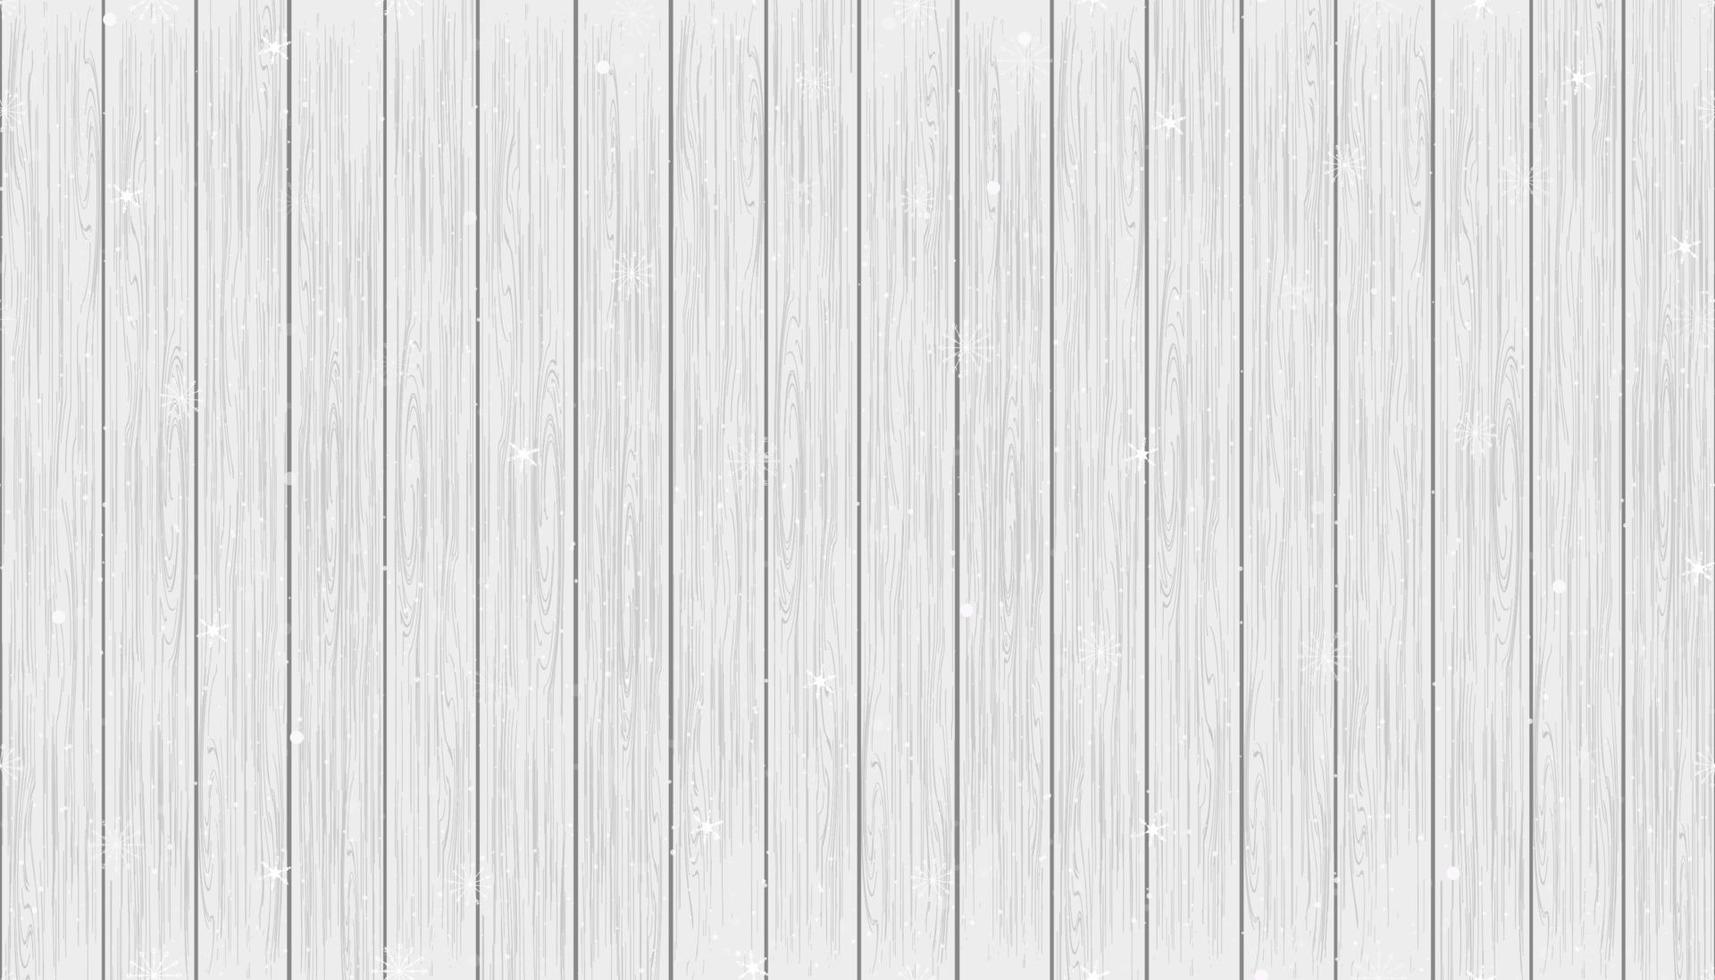 fond de noël panoramique à motif harmonieux avec neige sur bois, scène d'hiver holizon sauvage à motif vectoriel avec neige sur la texture du panneau de bois blanc et gris